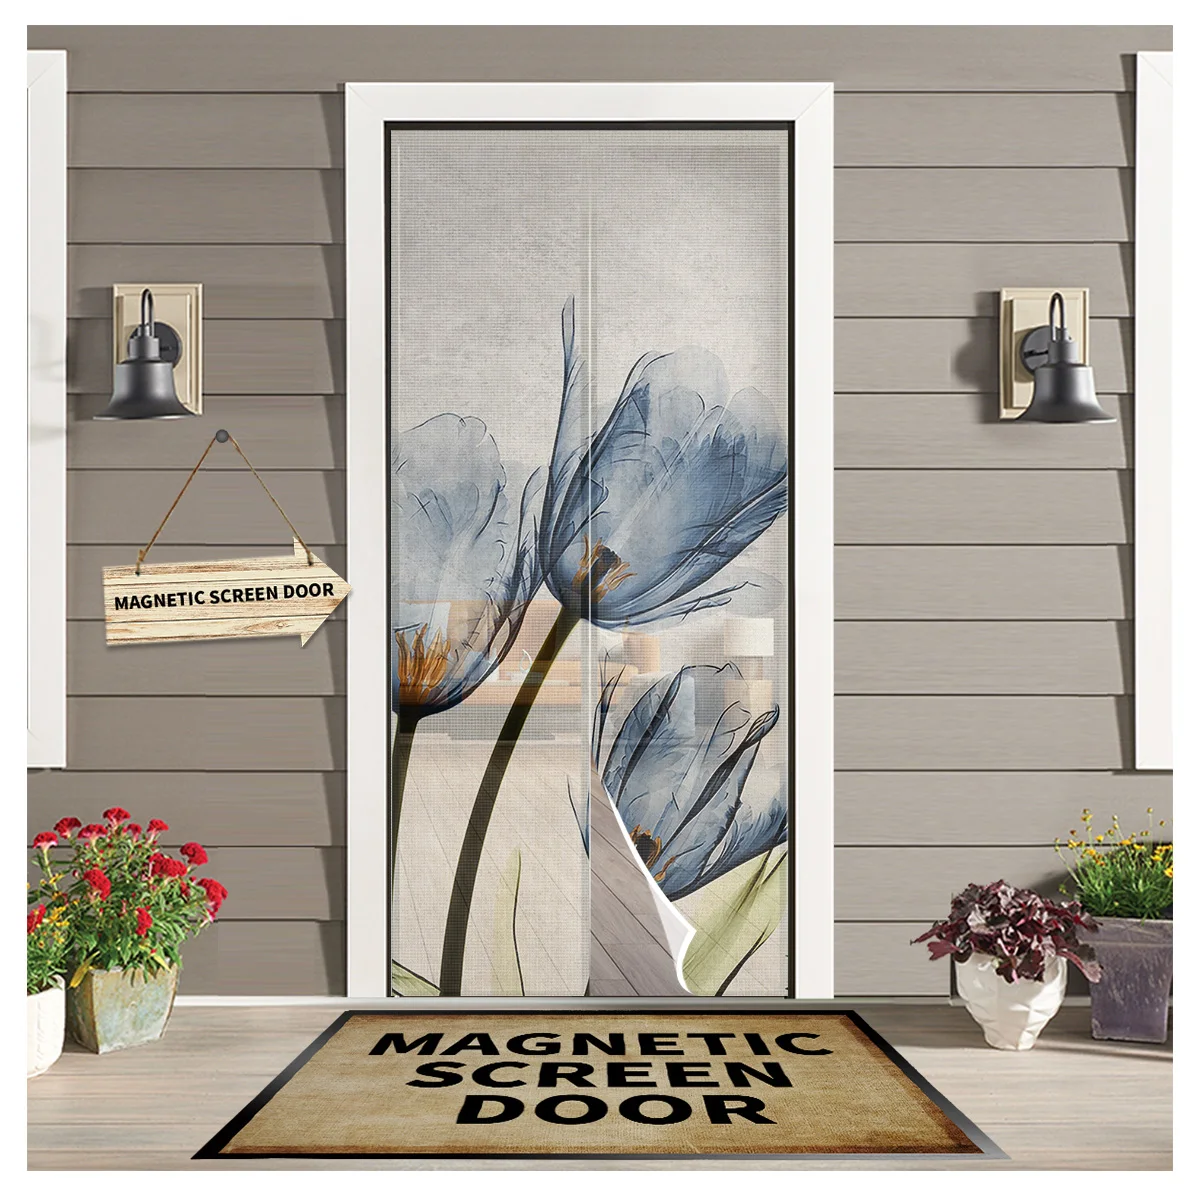 

Синяя тюльпан анти-москитная Марля дверная занавеска магнитный дверной экран для спальни летняя дверь оконный экран s